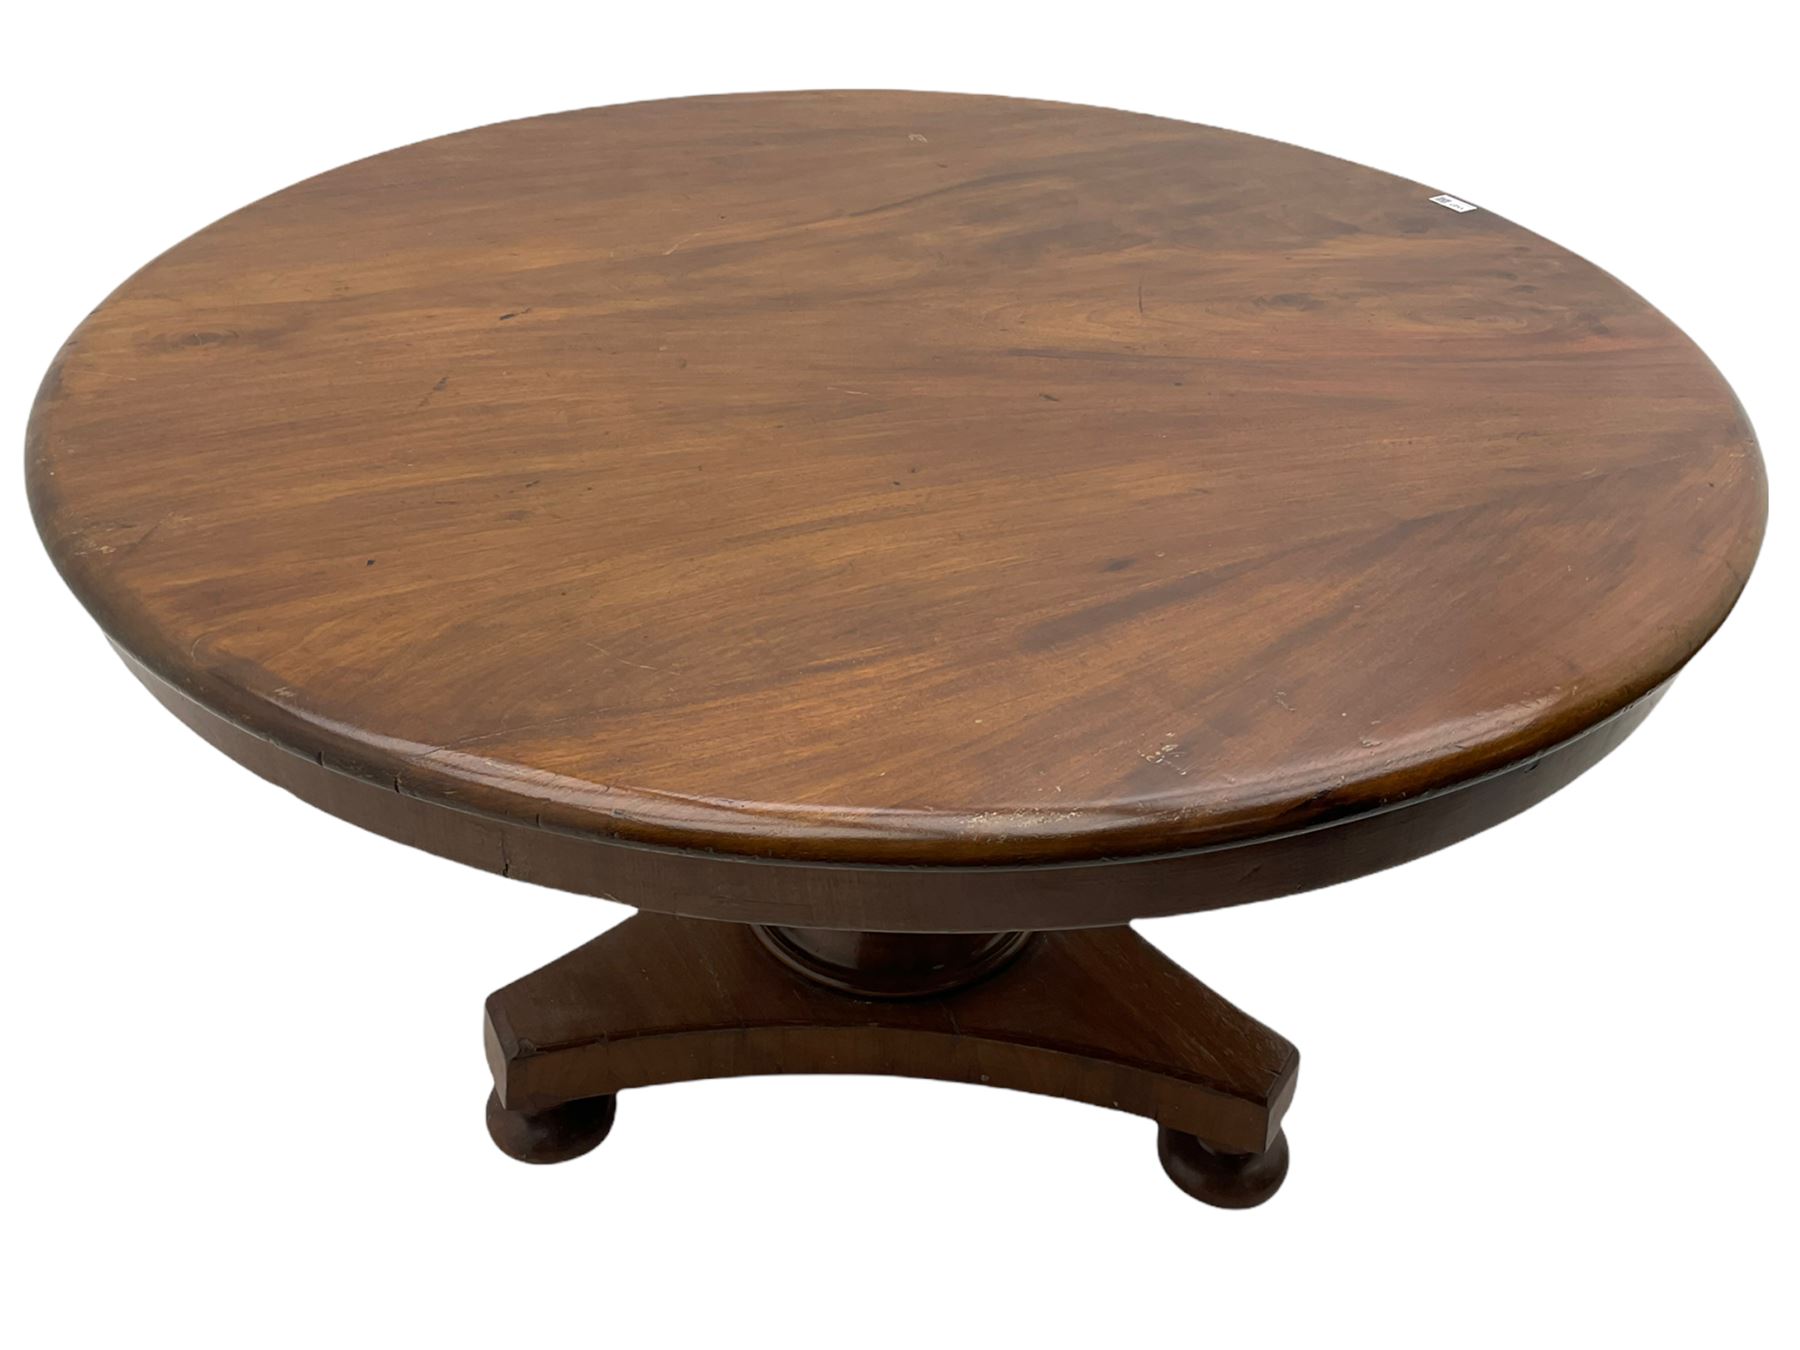 Victorian mahogany breakfast table - Image 2 of 5